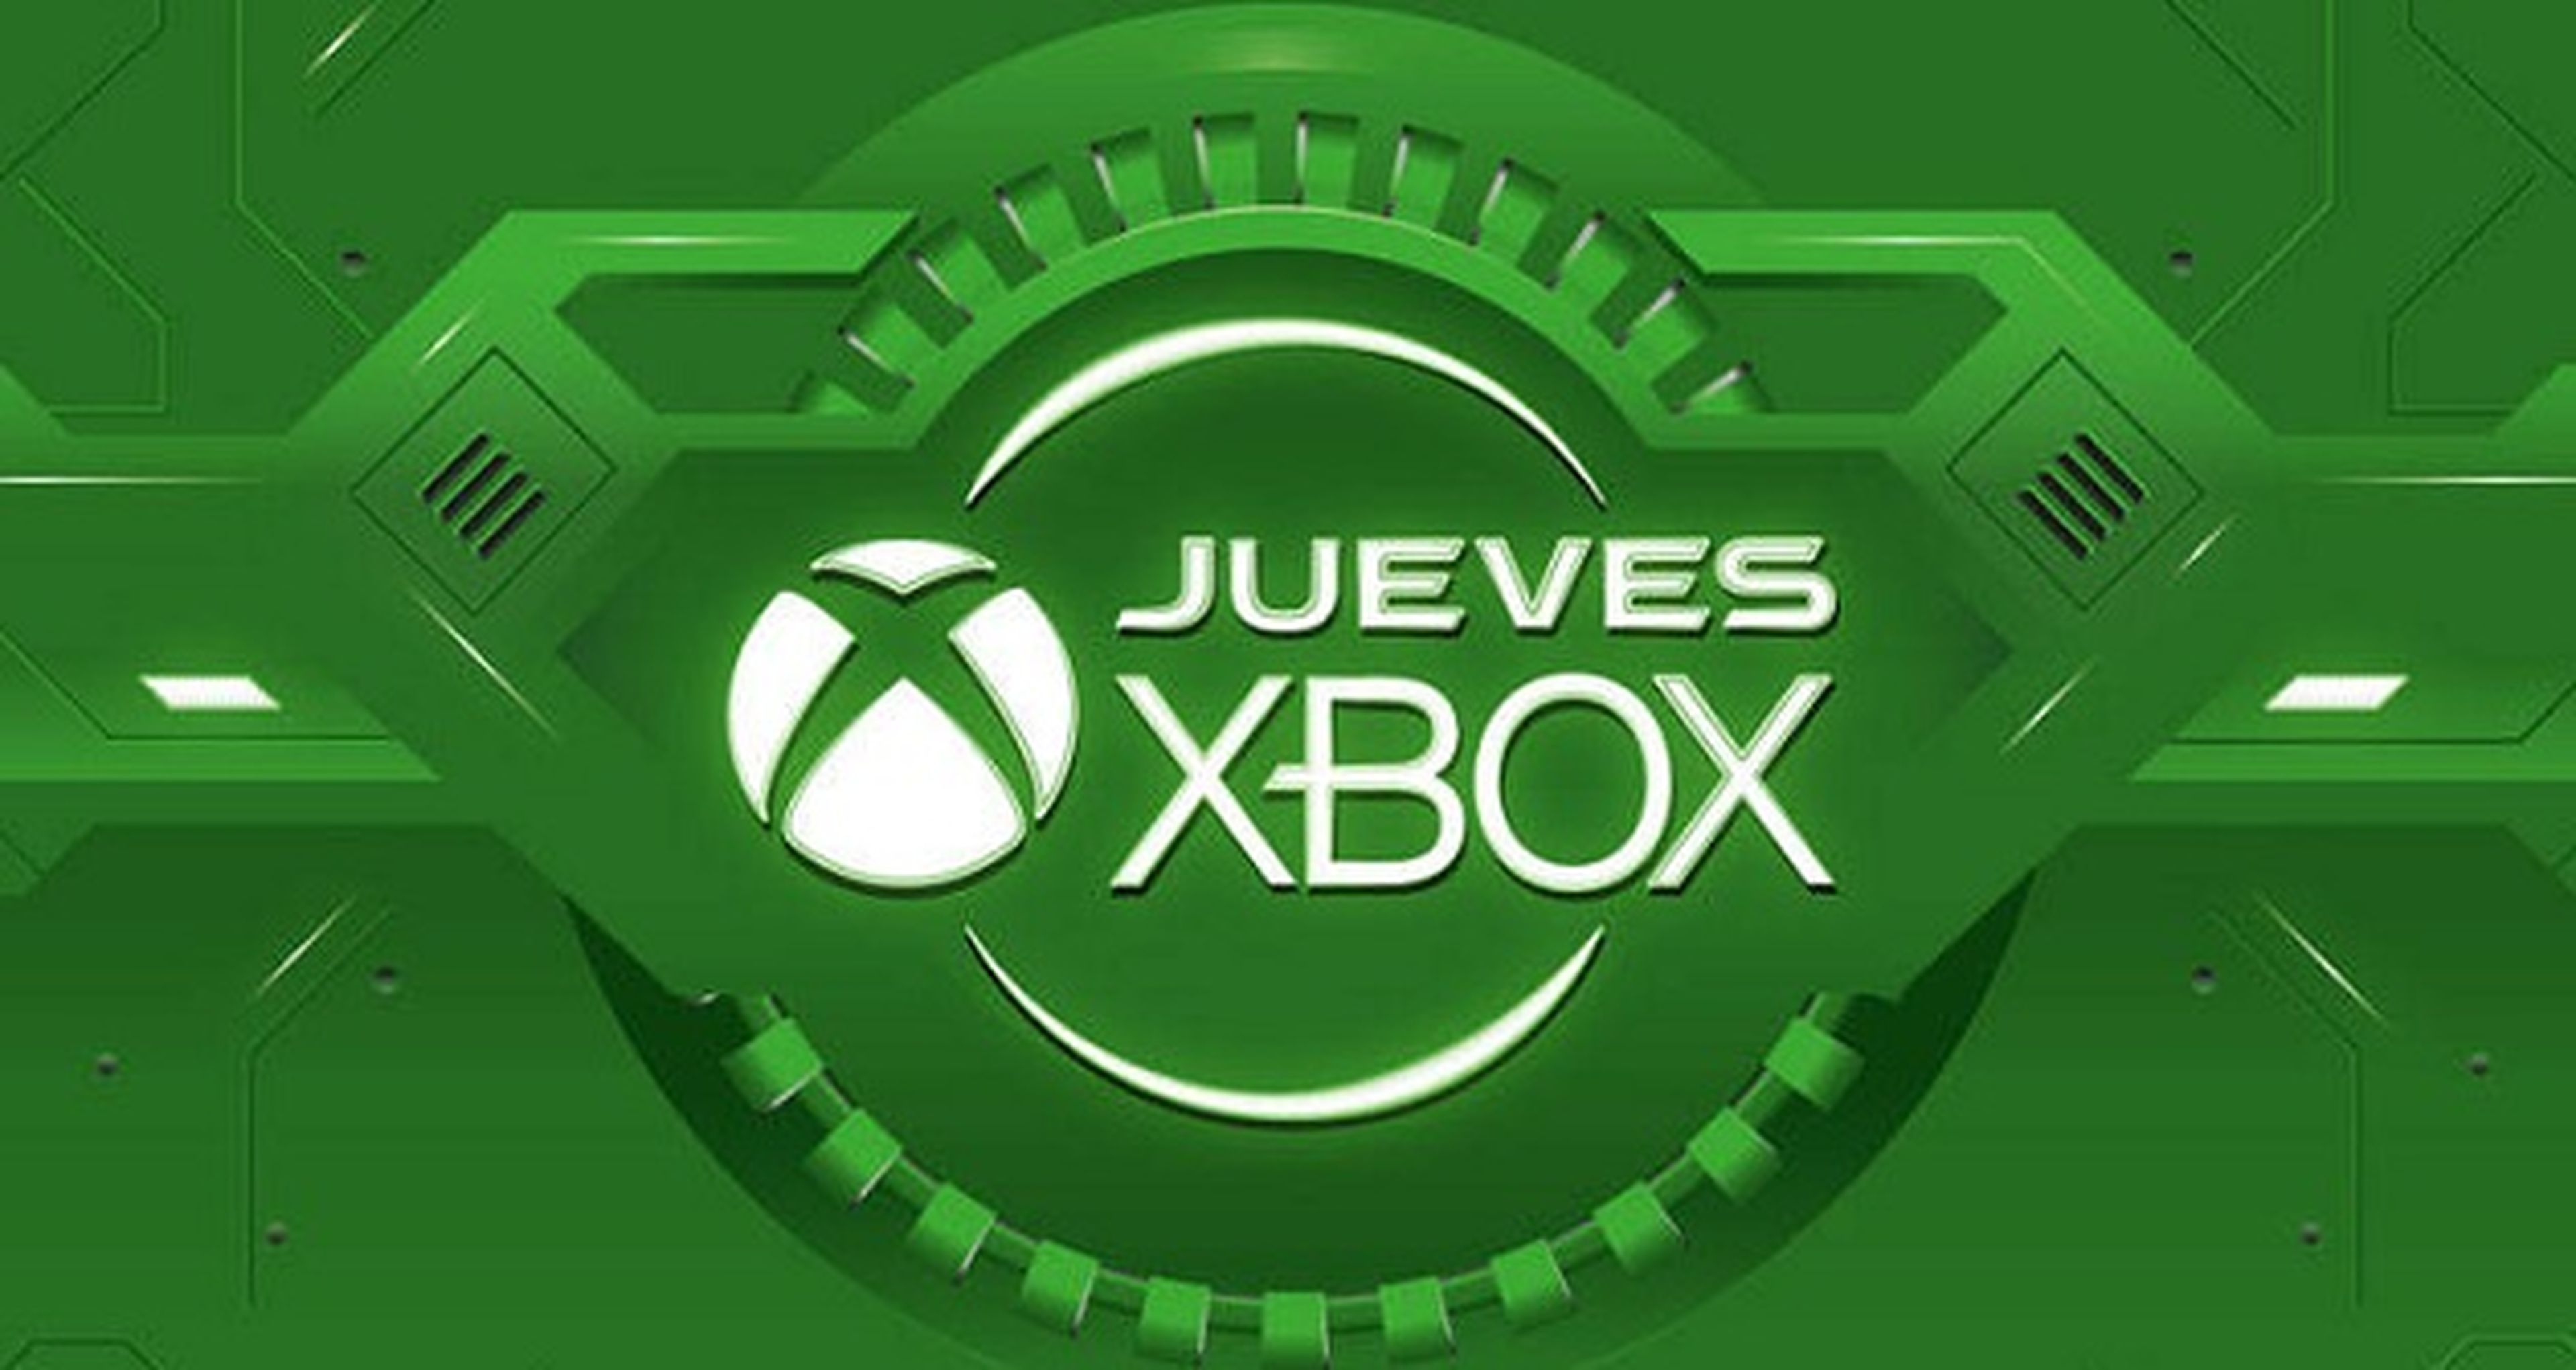 Jueves Xbox en GAME: cuarta semana de ofertas